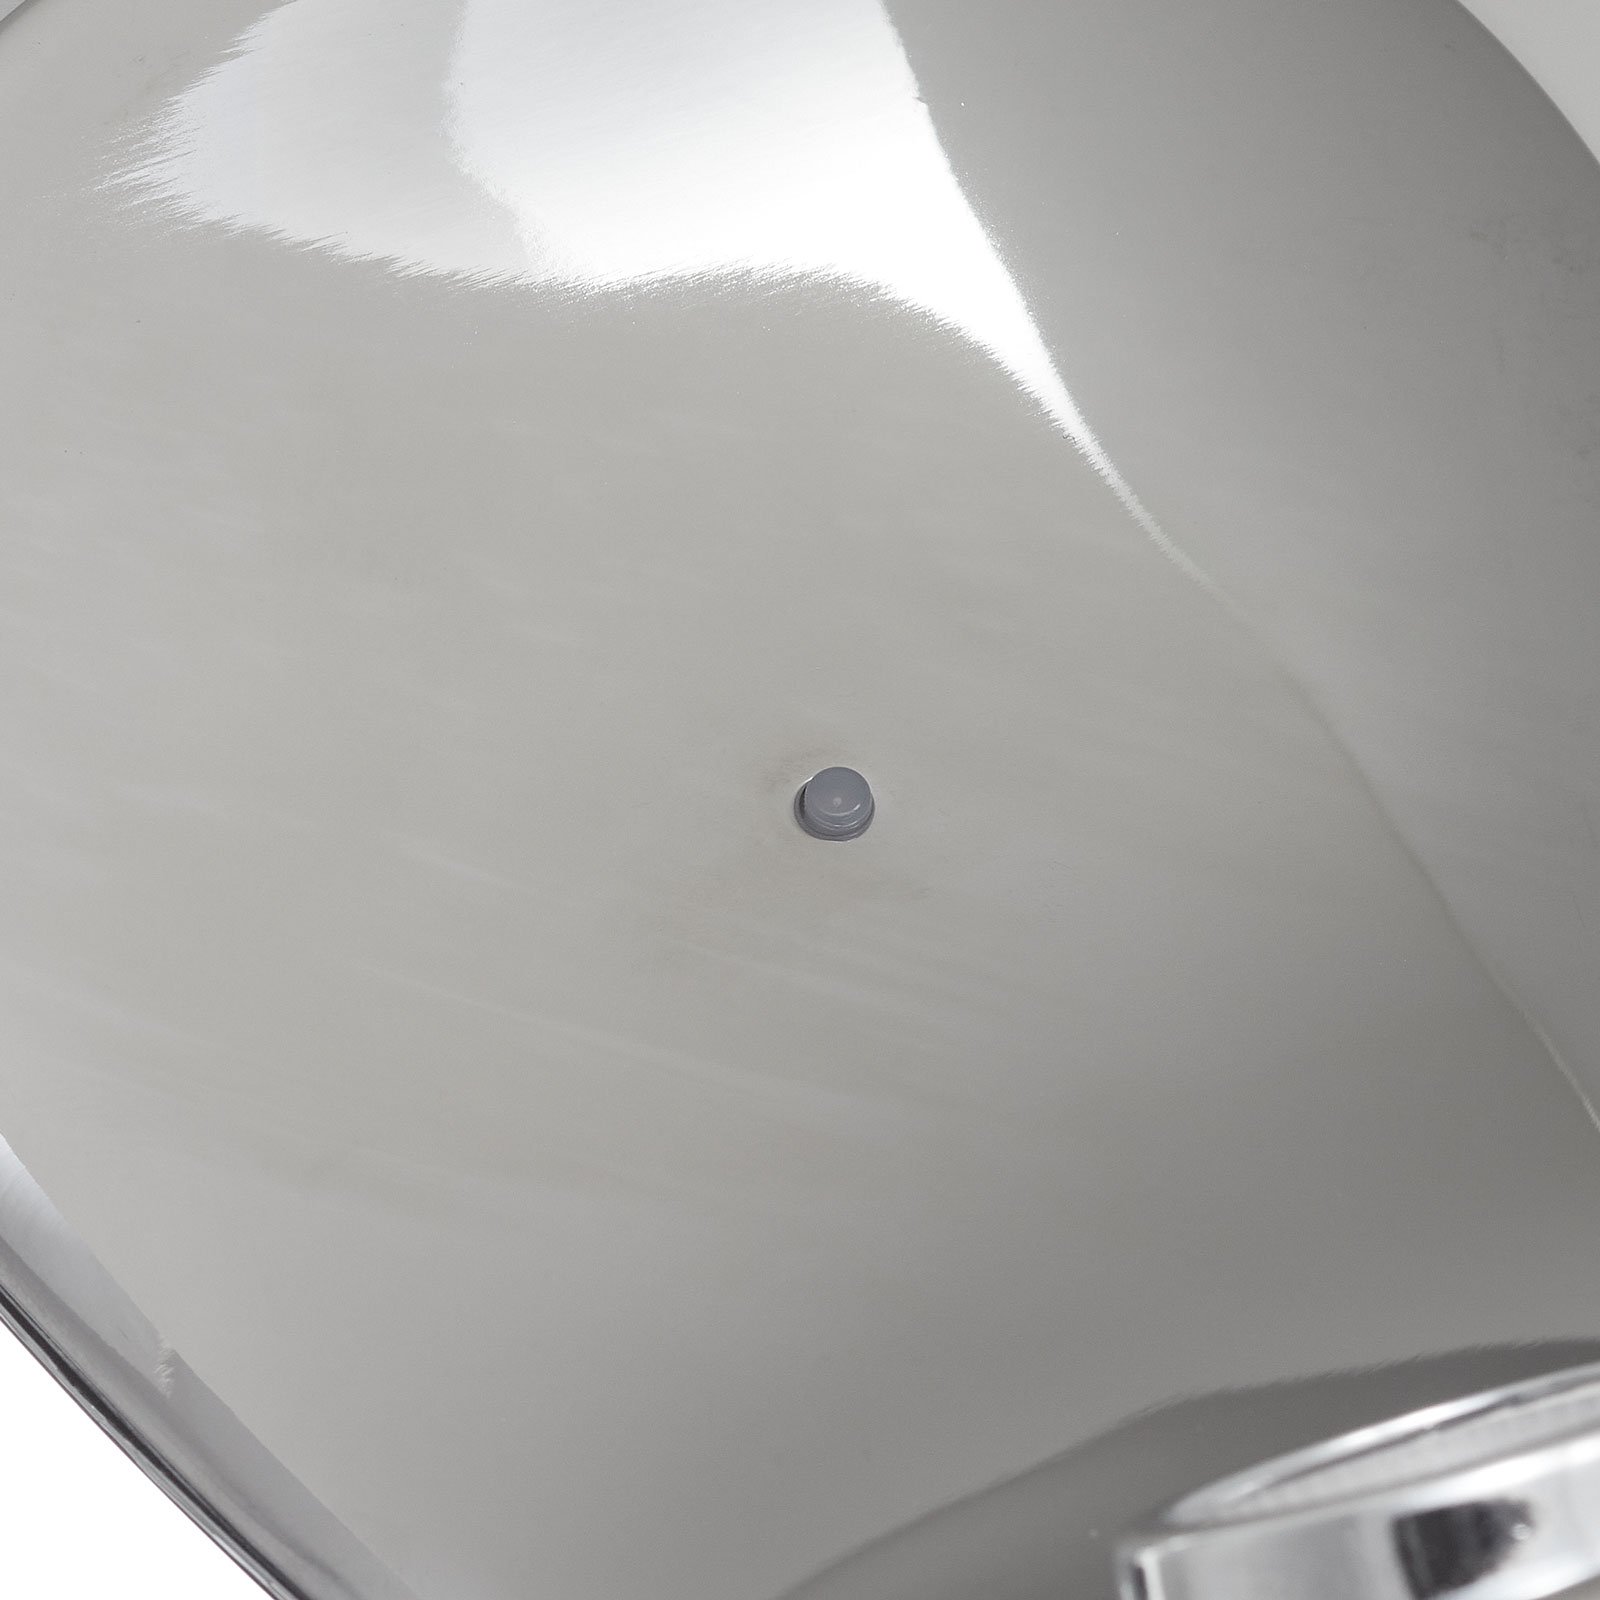 Dizajnová stolová lampa Curl biela/zrkadlová